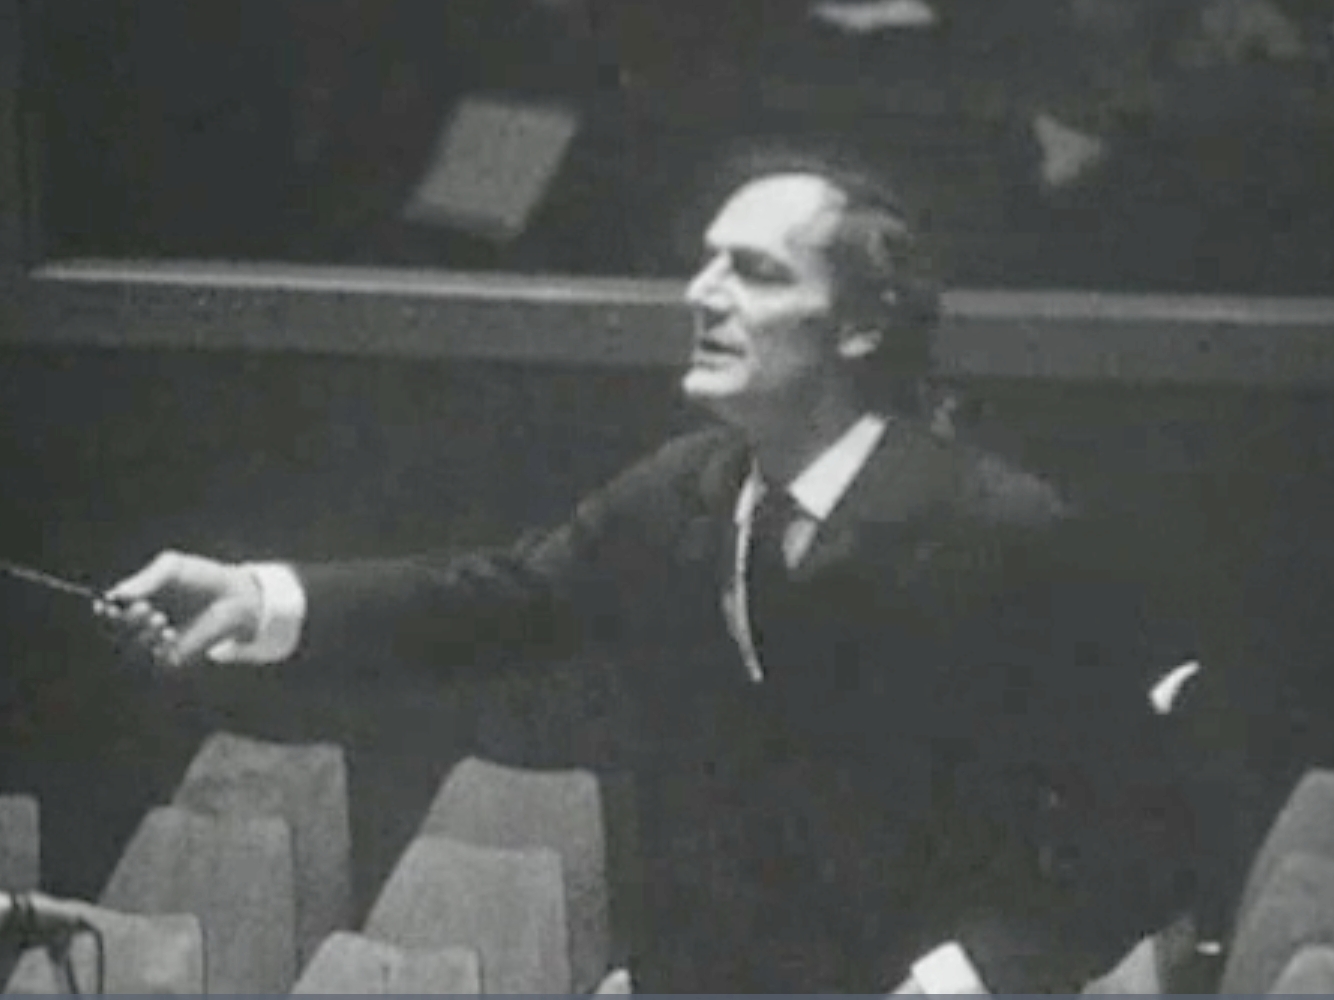 Jean-Marie AUBERSON, instantané cité de la vidéo «Le musicien - Un papa chef d'orchestre qui sait partager sa passion de la musique» du site des archives de la TSR, 1988 